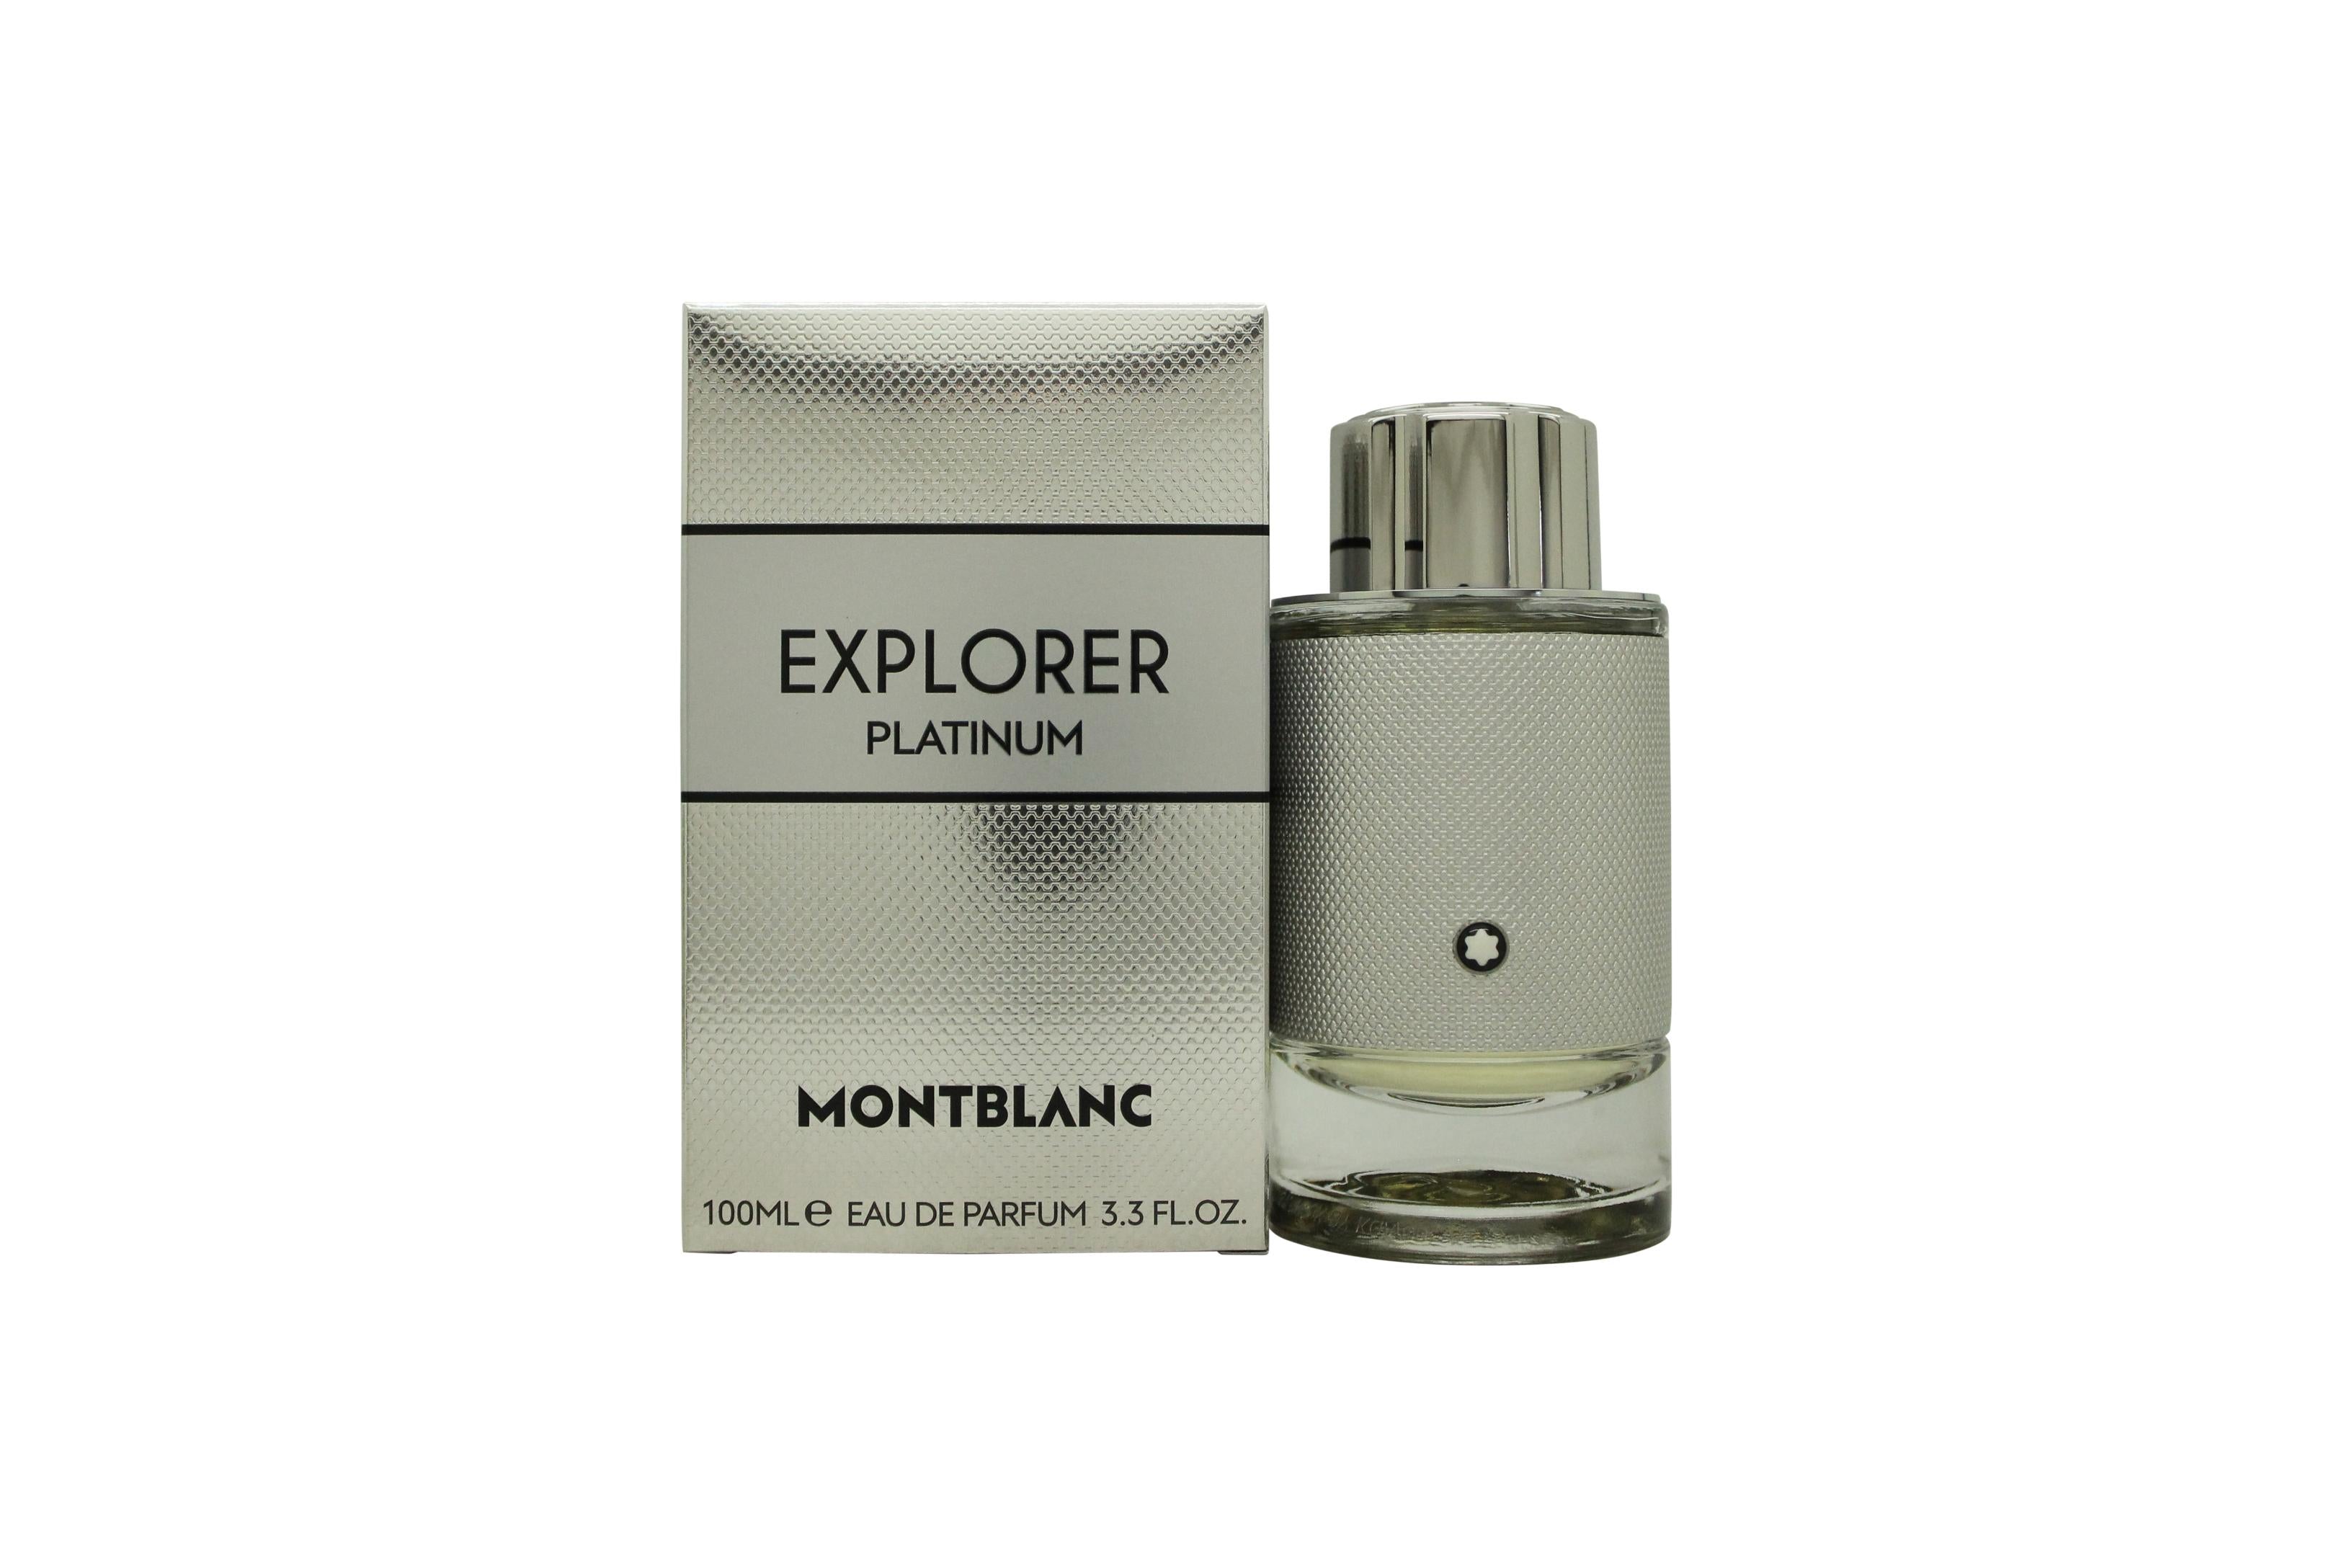 View Mont Blanc Explorer Platinum Eau de Parfum 100ml Spray information